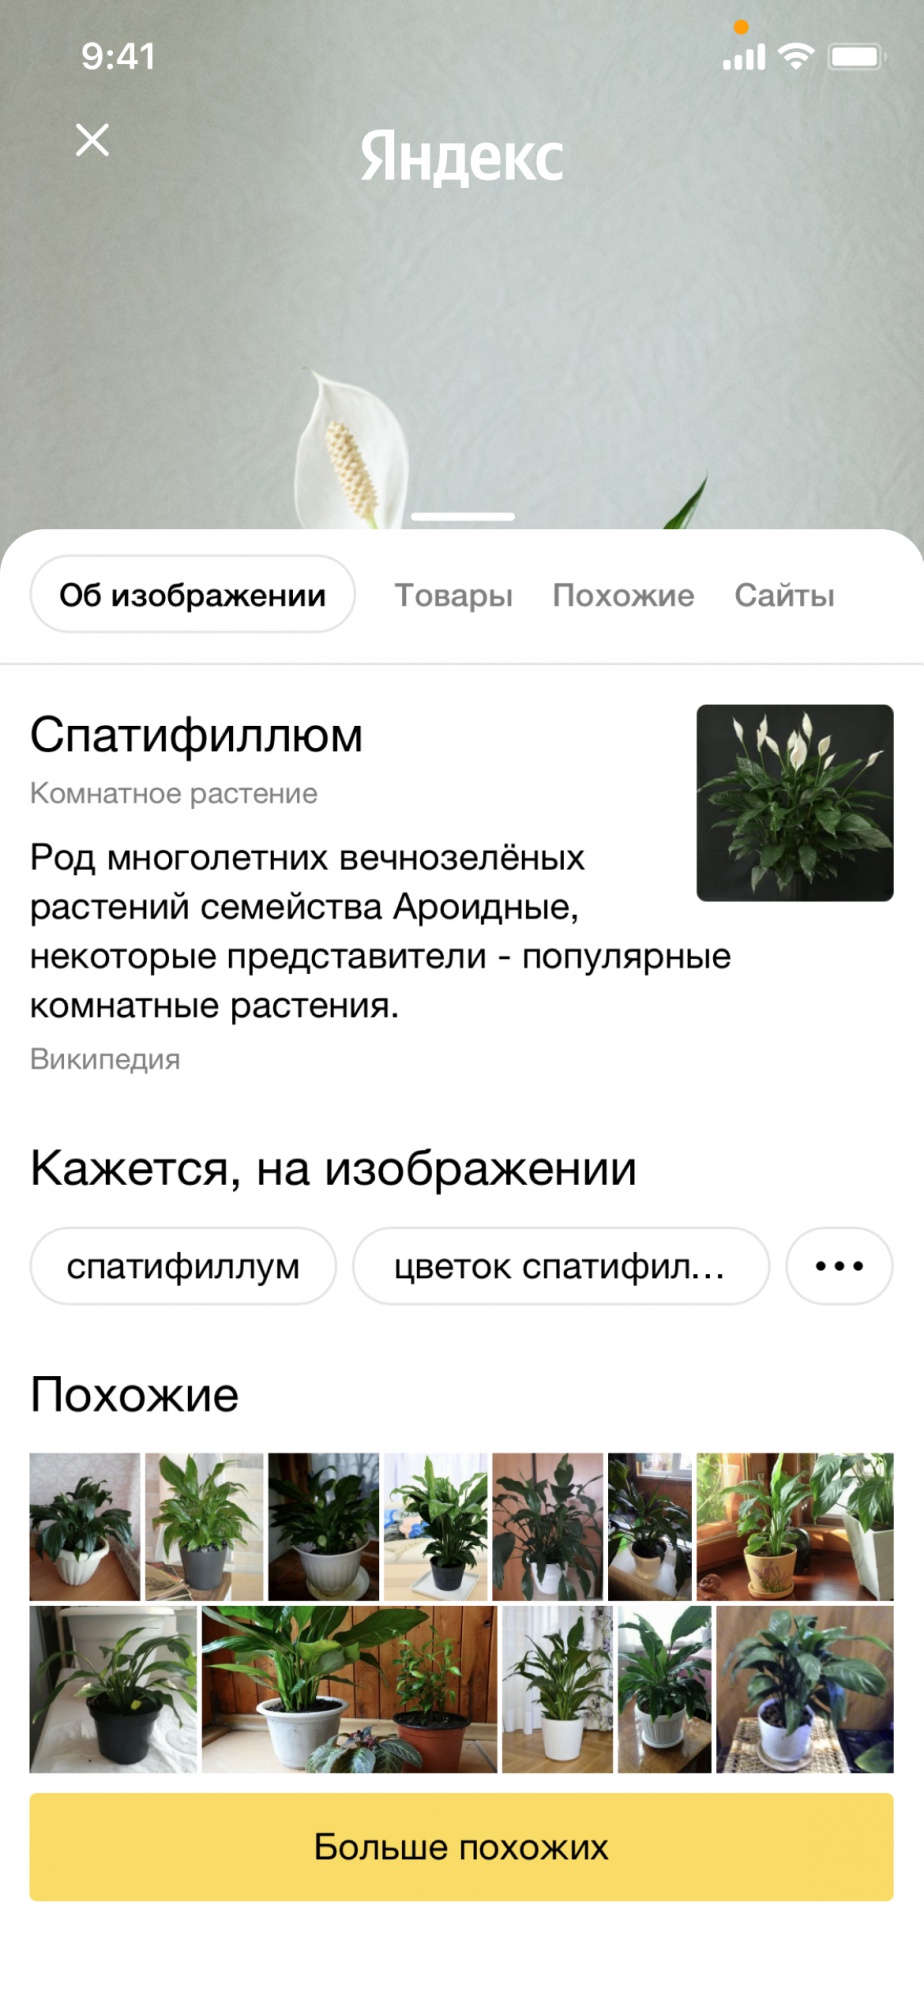 Яндекс запустил умную камеру в мобильном приложении